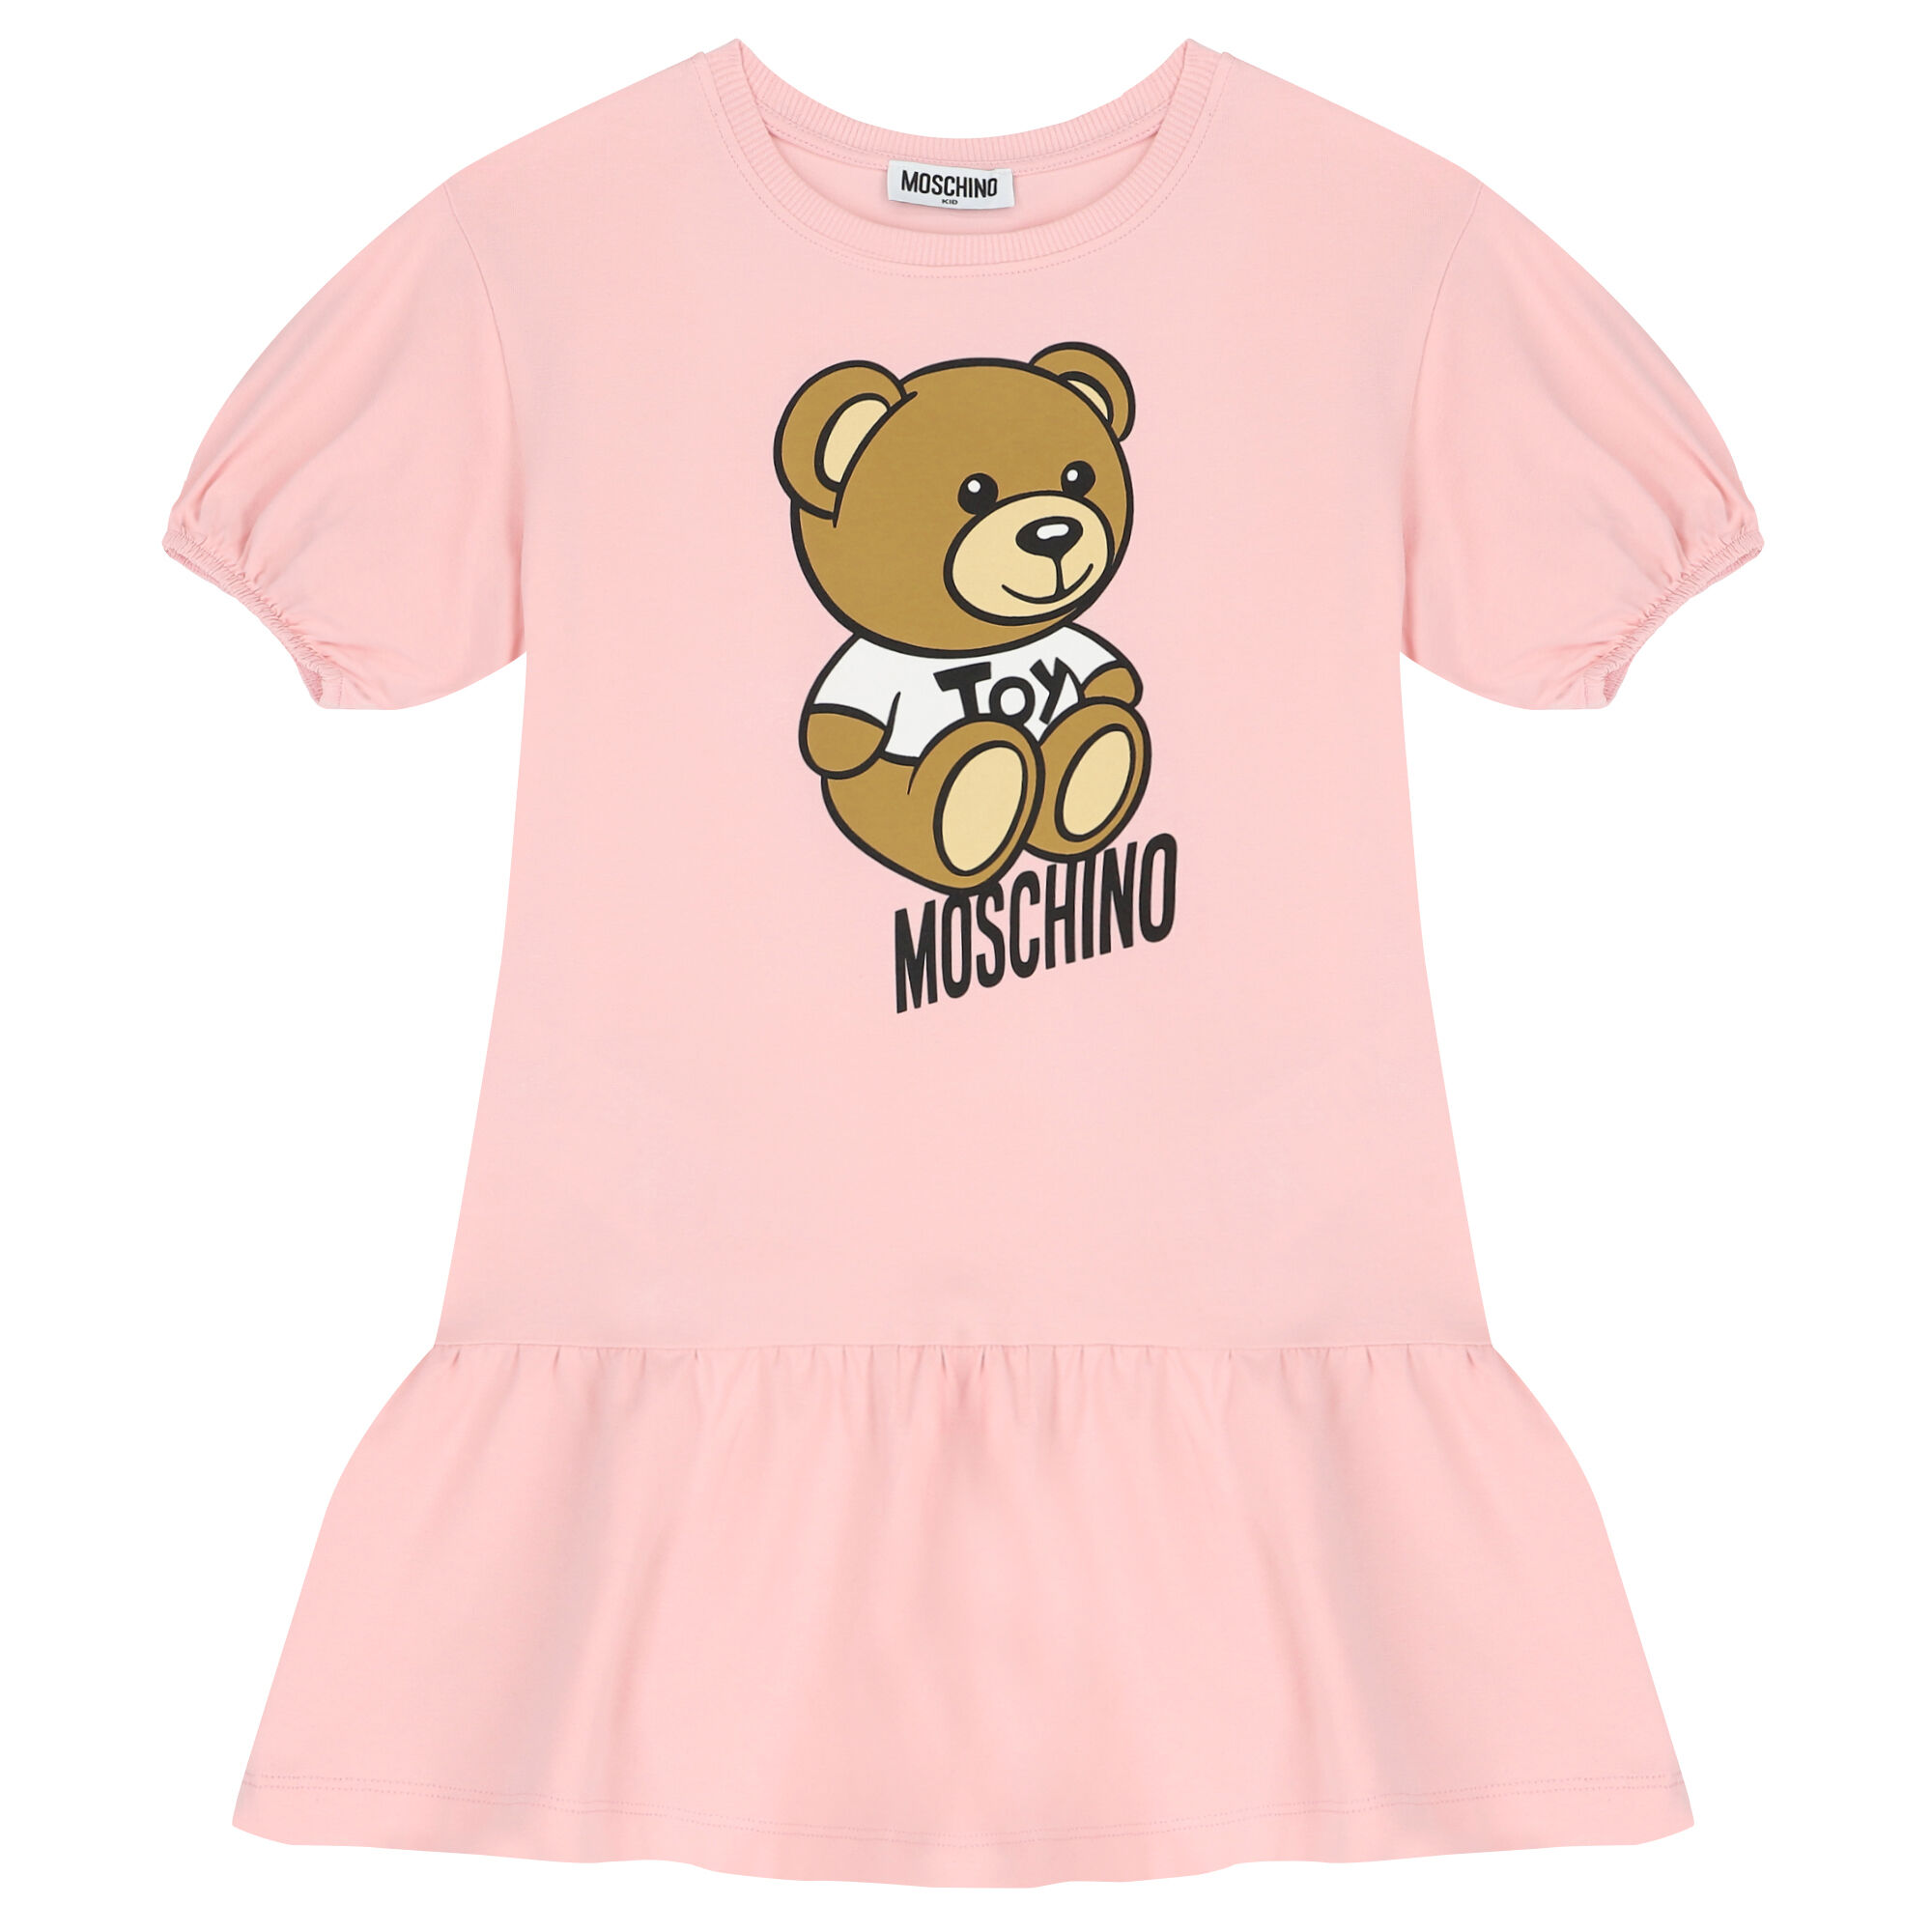 Girls Moschino Dress - Girls dresses